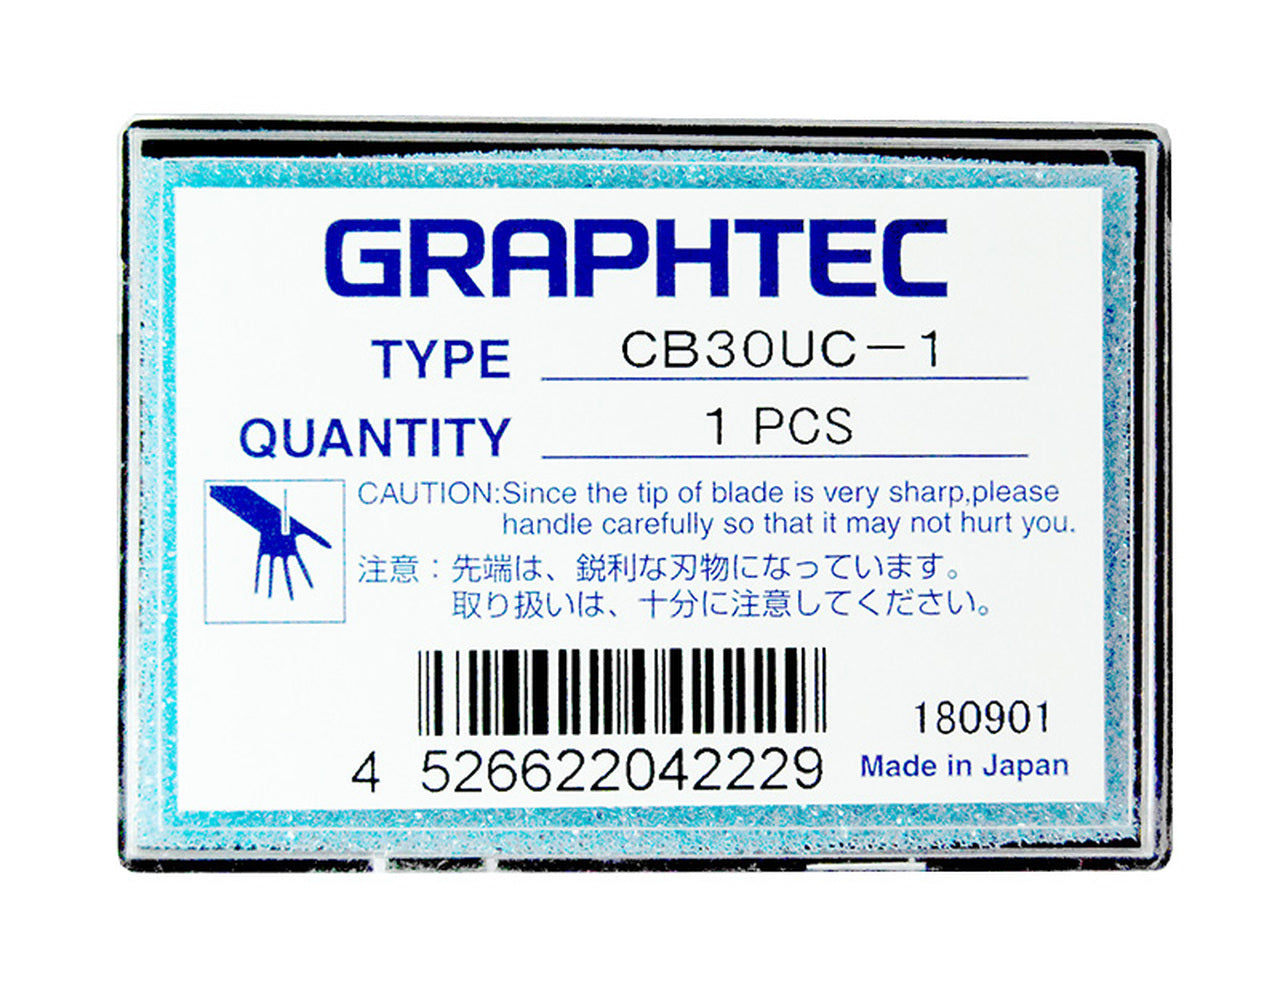 Graphtec 54 vinyl Cutter; Cutter FC9000, Vinyl Cutter, F9000-160